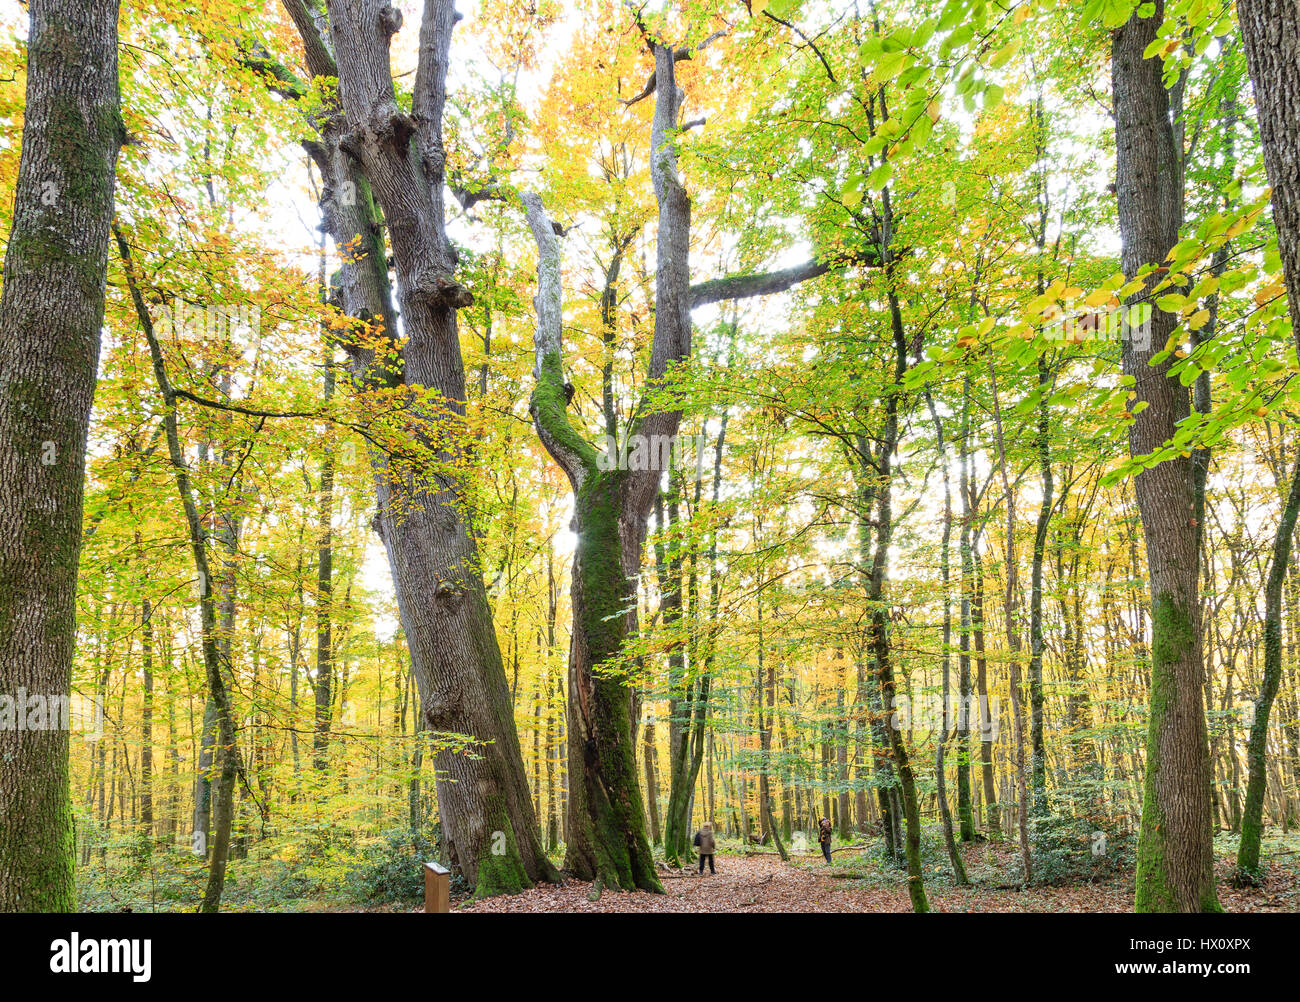 France, Allier, Tronçais forest, Saint-Bonnet-Troncais, remarkables sessiles oaks the Jumeaux (Quercus petraea) aged beginning of  XVIeme century Stock Photo